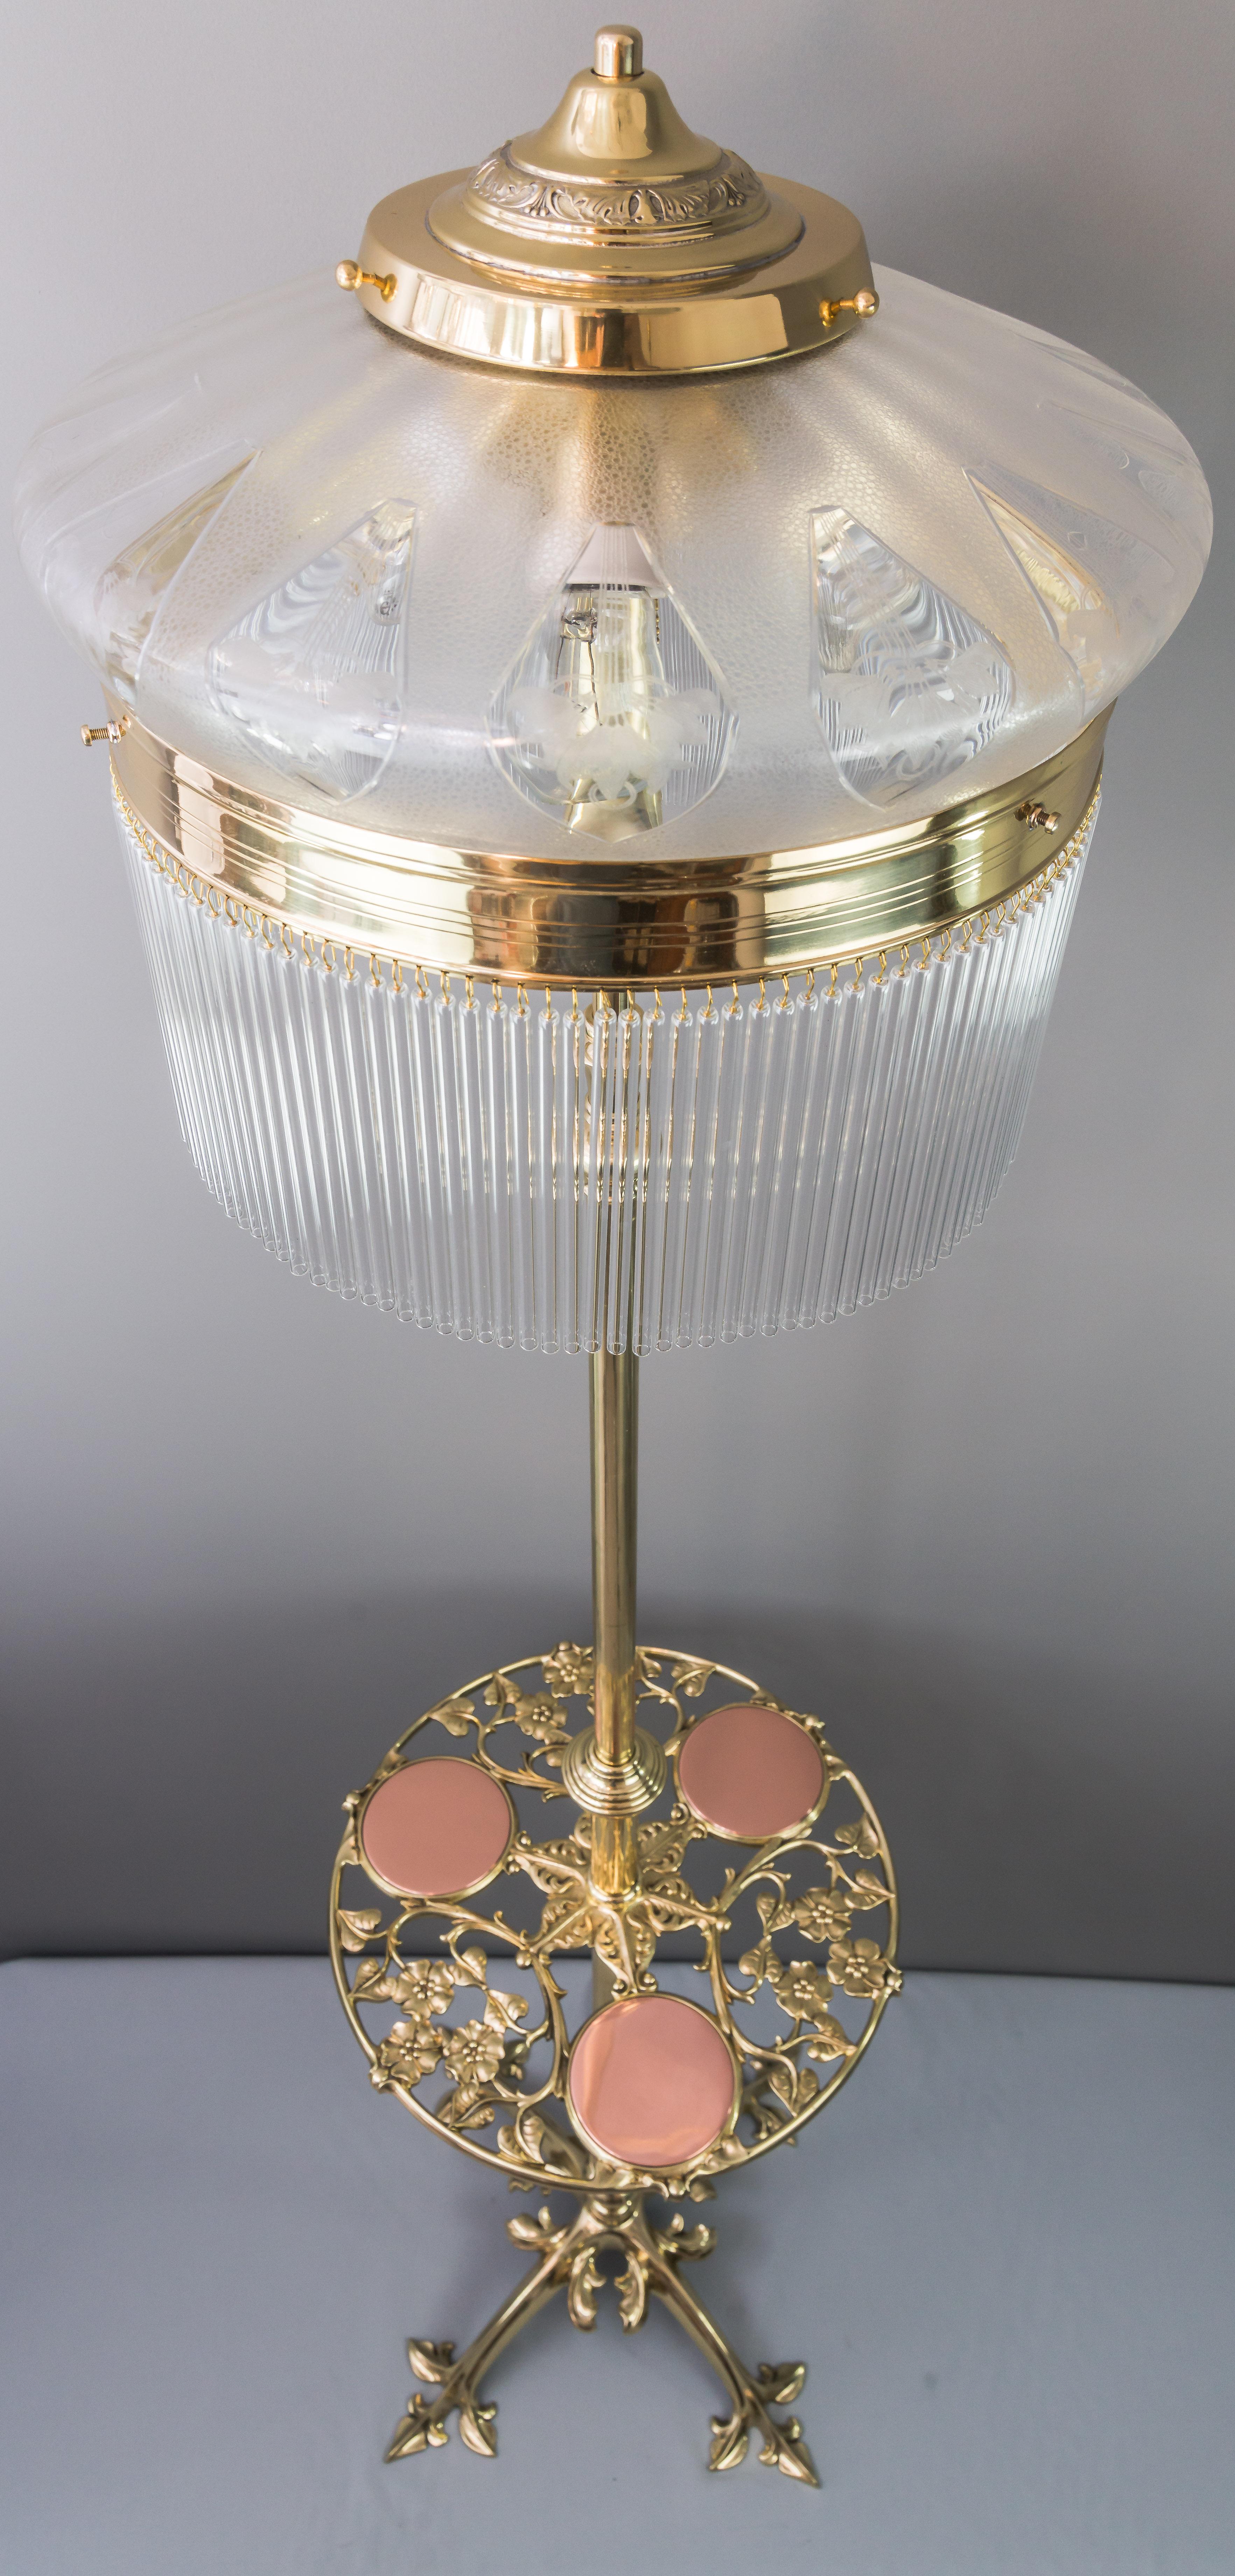 Adjustable Jugendstil Floor Lamp with Original Antique Glass Shade, circa 1908 10